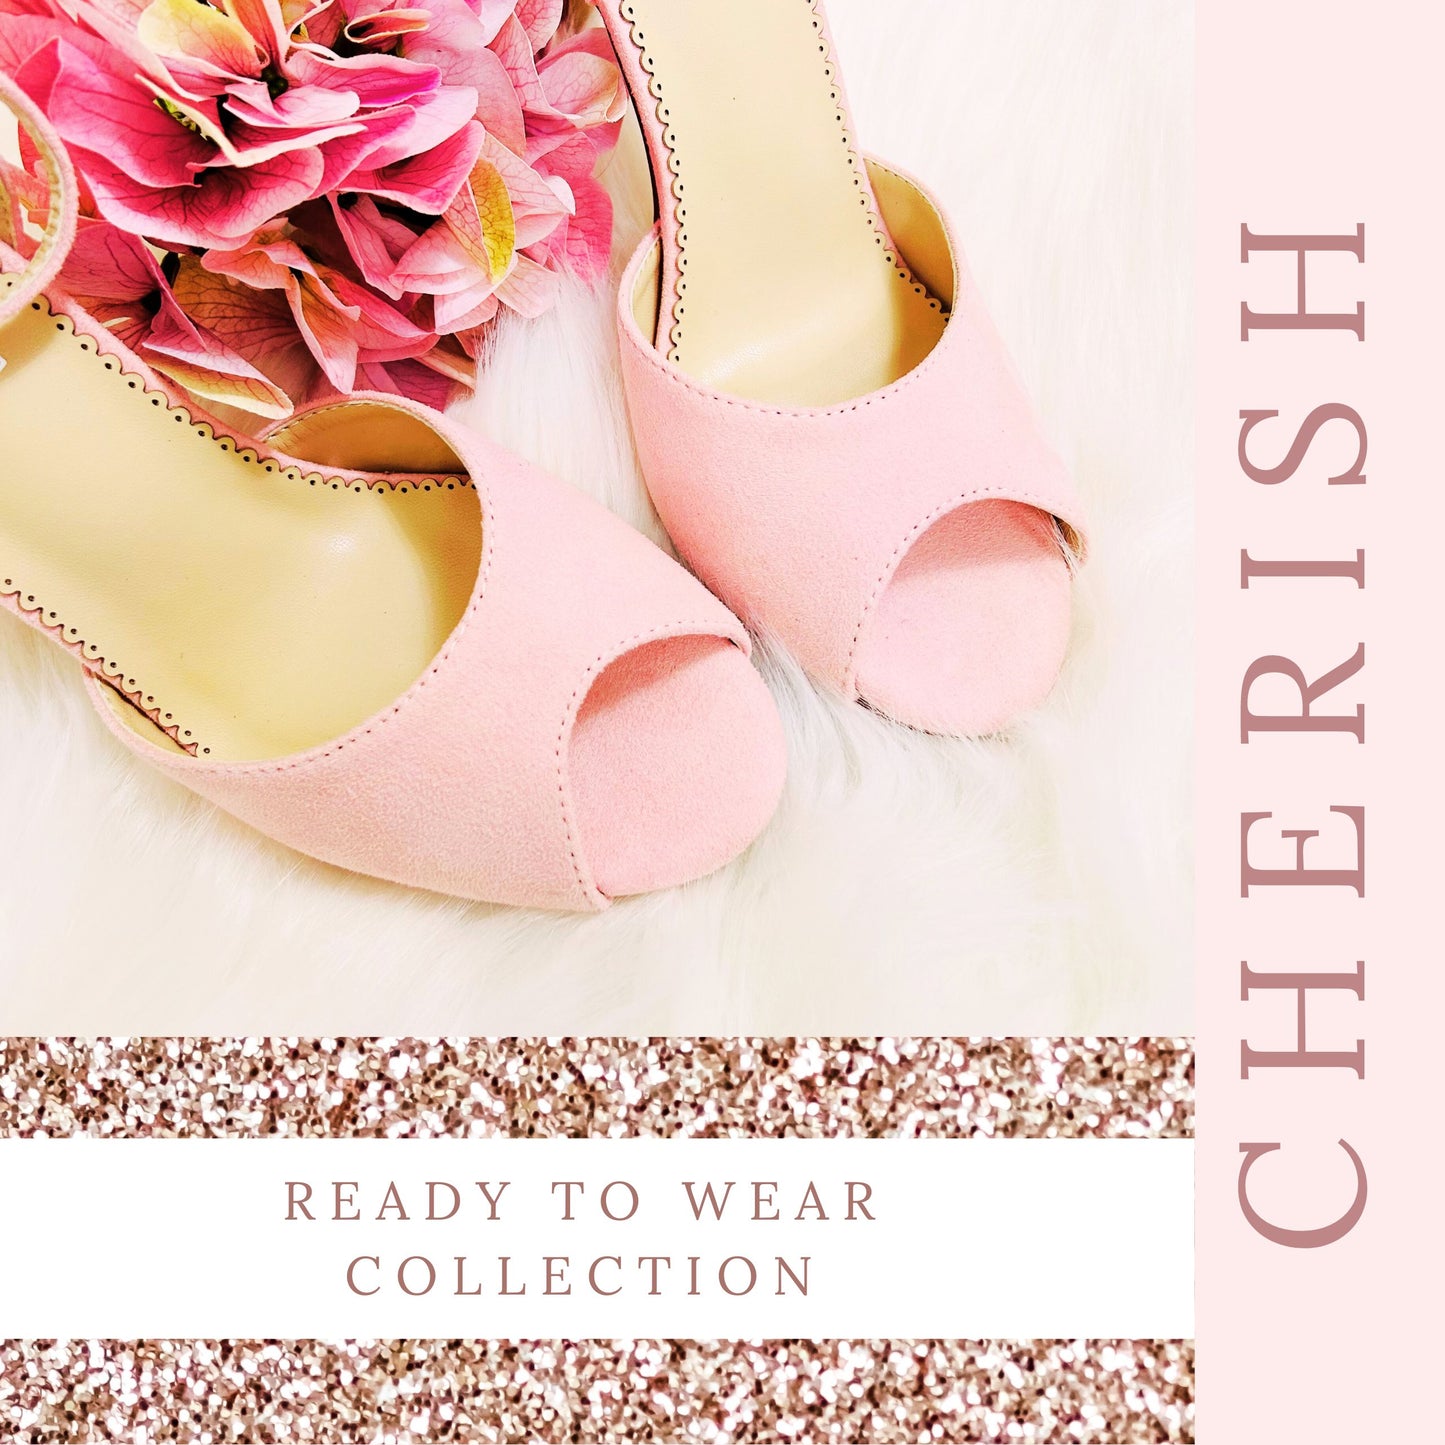 pastel-pink-wedding-shoes